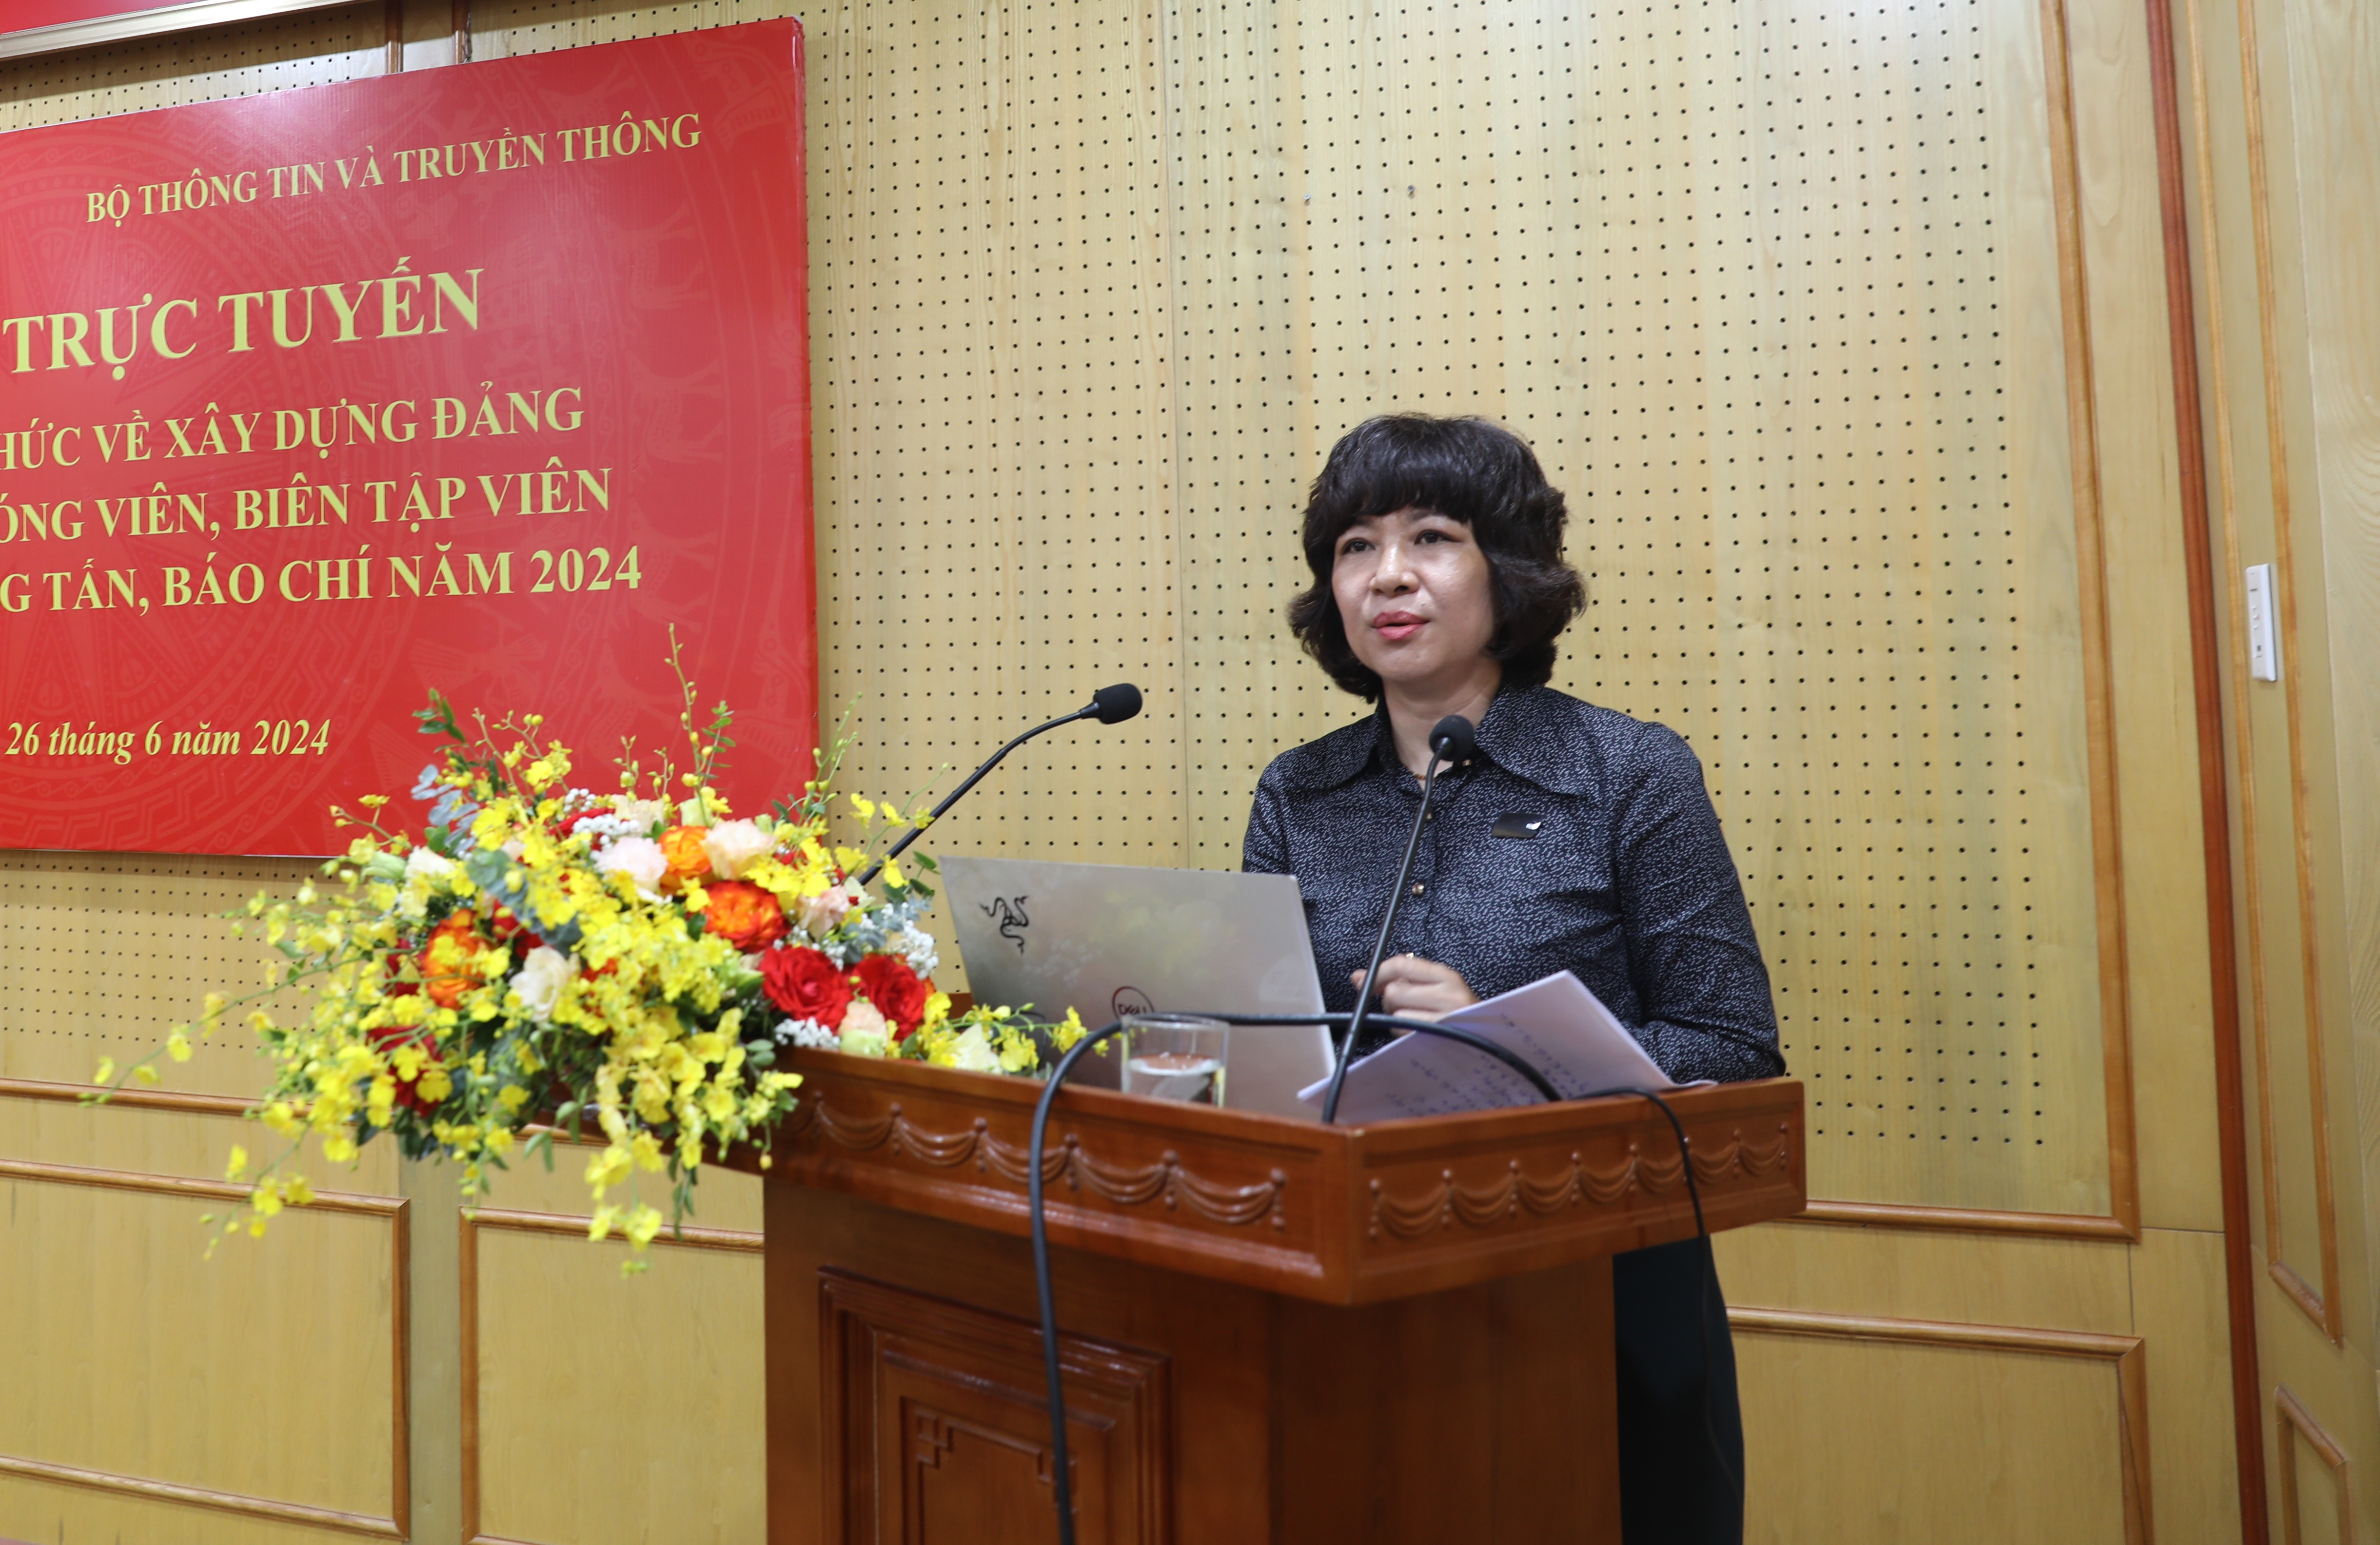 Đ/c Phan Phương Quyên, Trưởng ban Xây dựng Đảng, Báo Nhân Dân chia sẻ kinh nghiệm sáng tạo tác phẩm của tác giả, nhóm tác giả đoạt giải Búa liềm vàng.